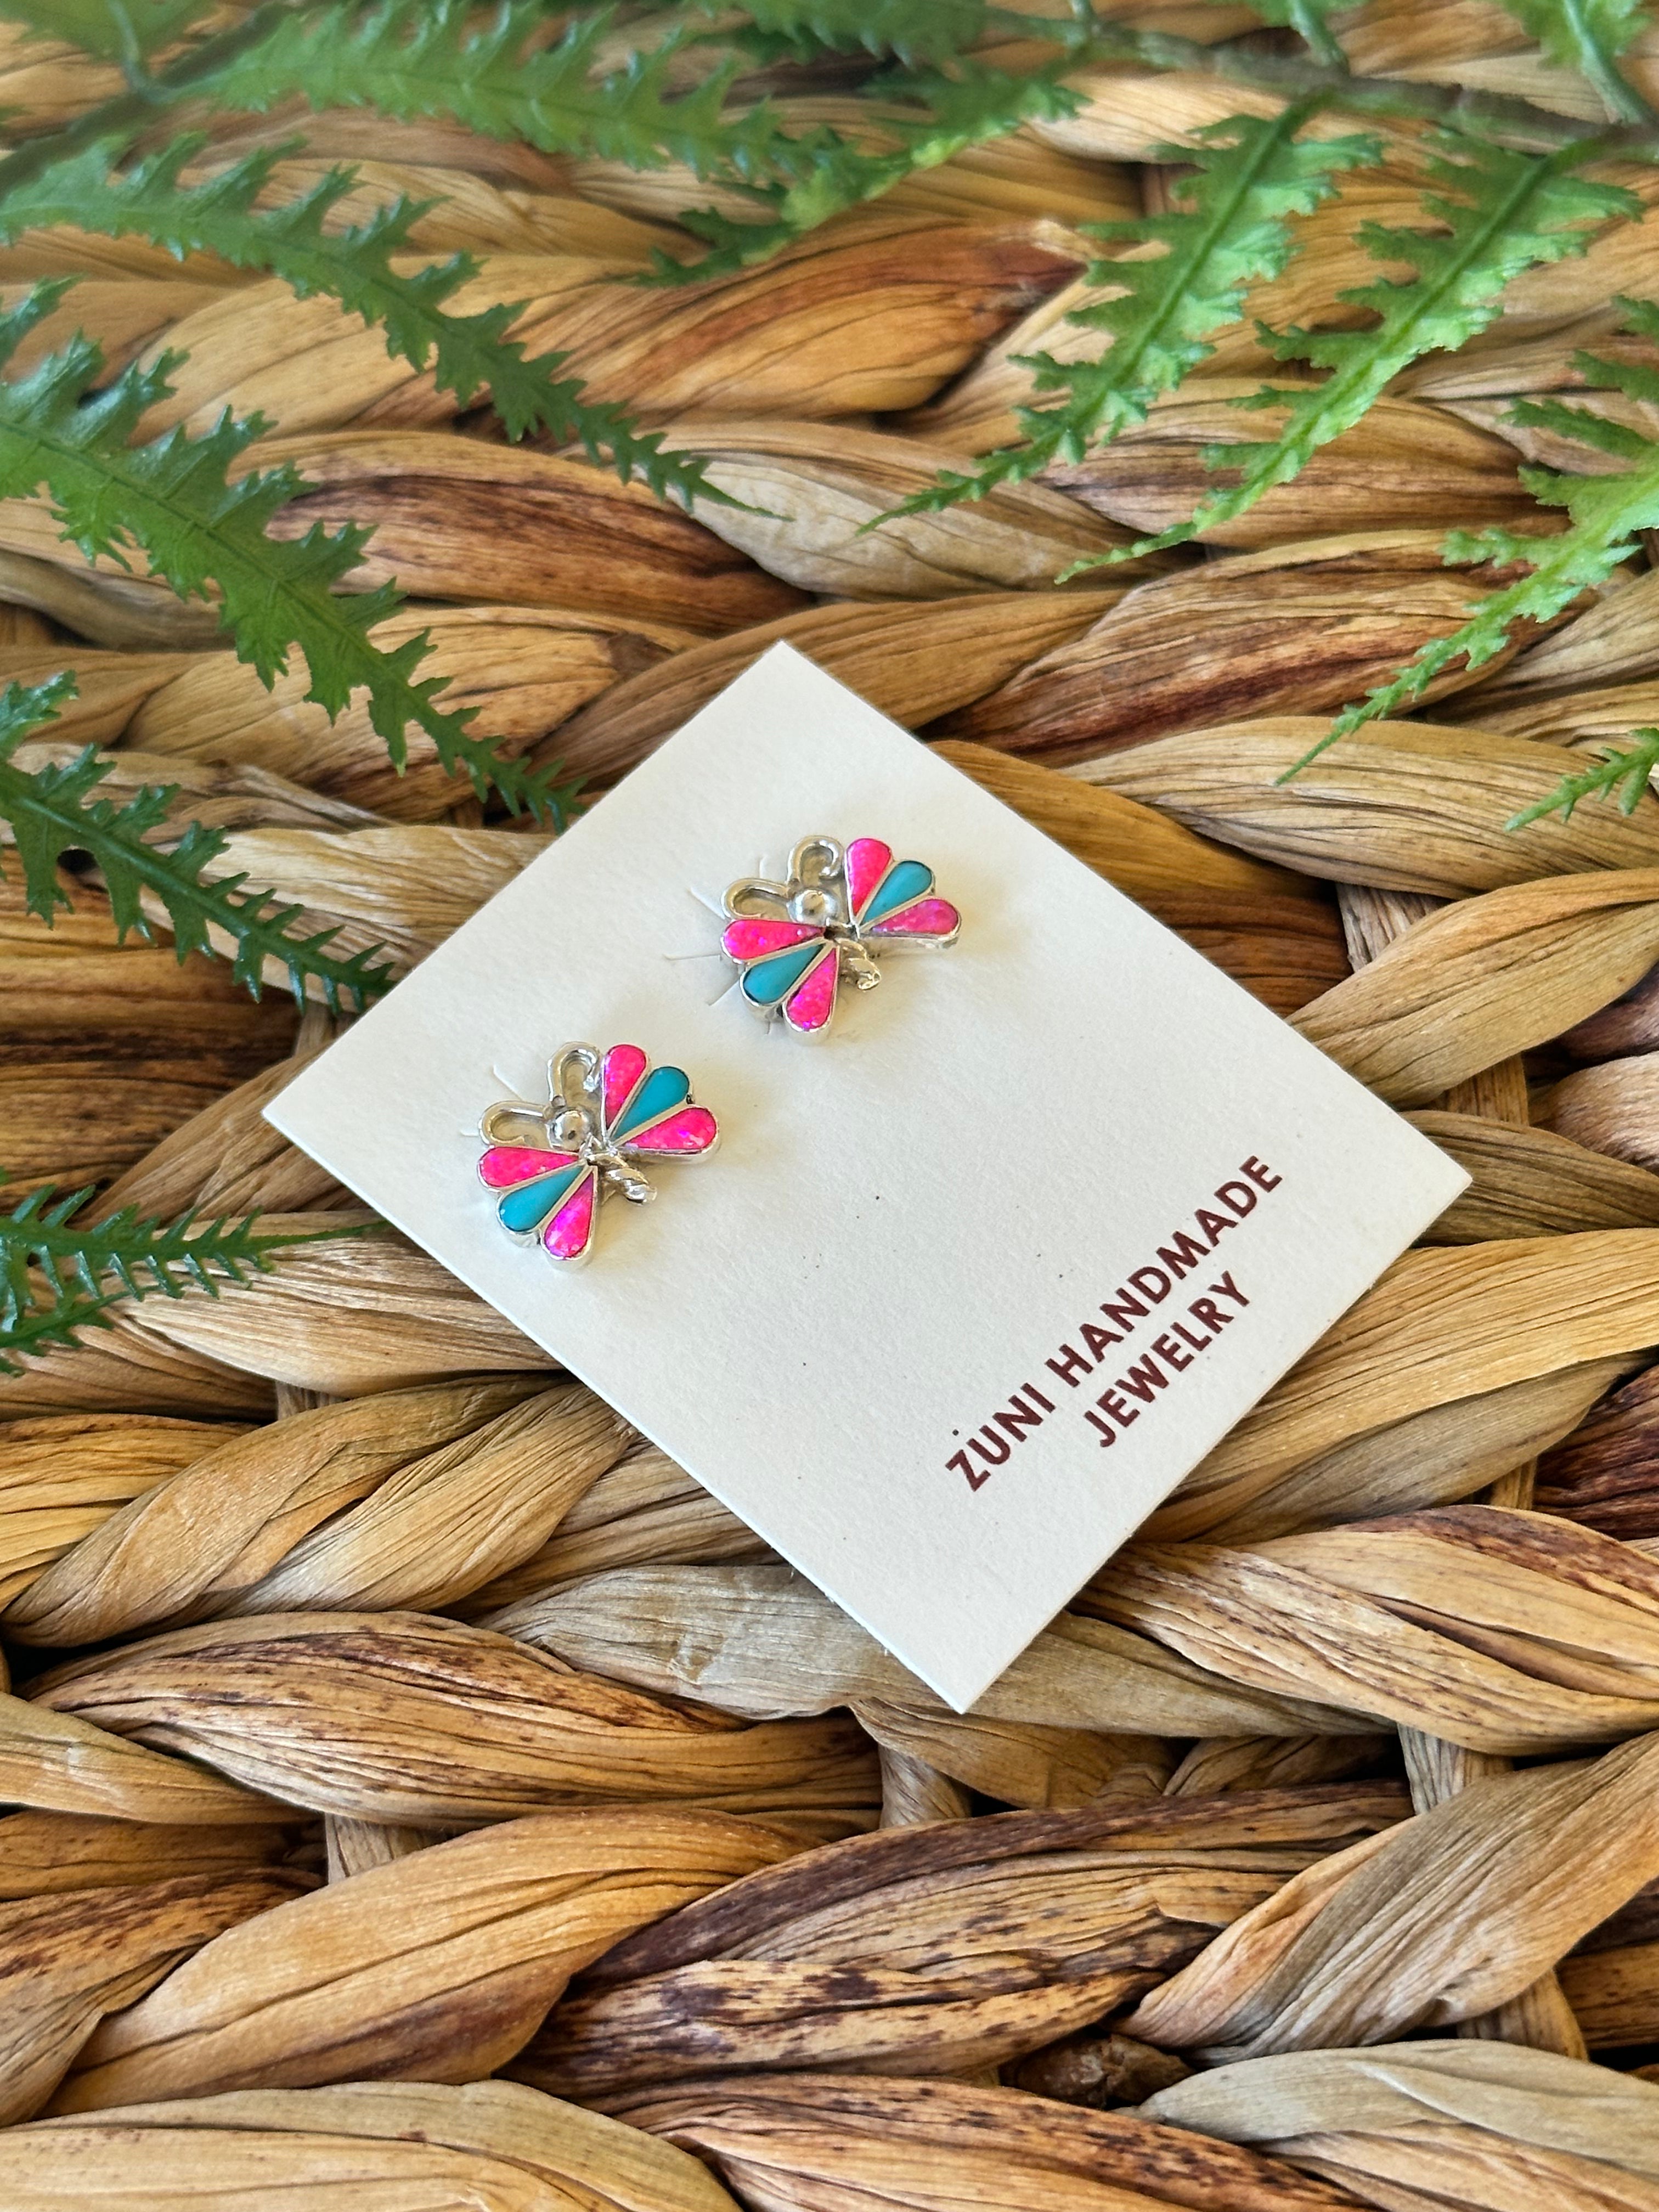 Zuni Handmade Multi Stone & Sterling Silver Post Butterfly Earrings